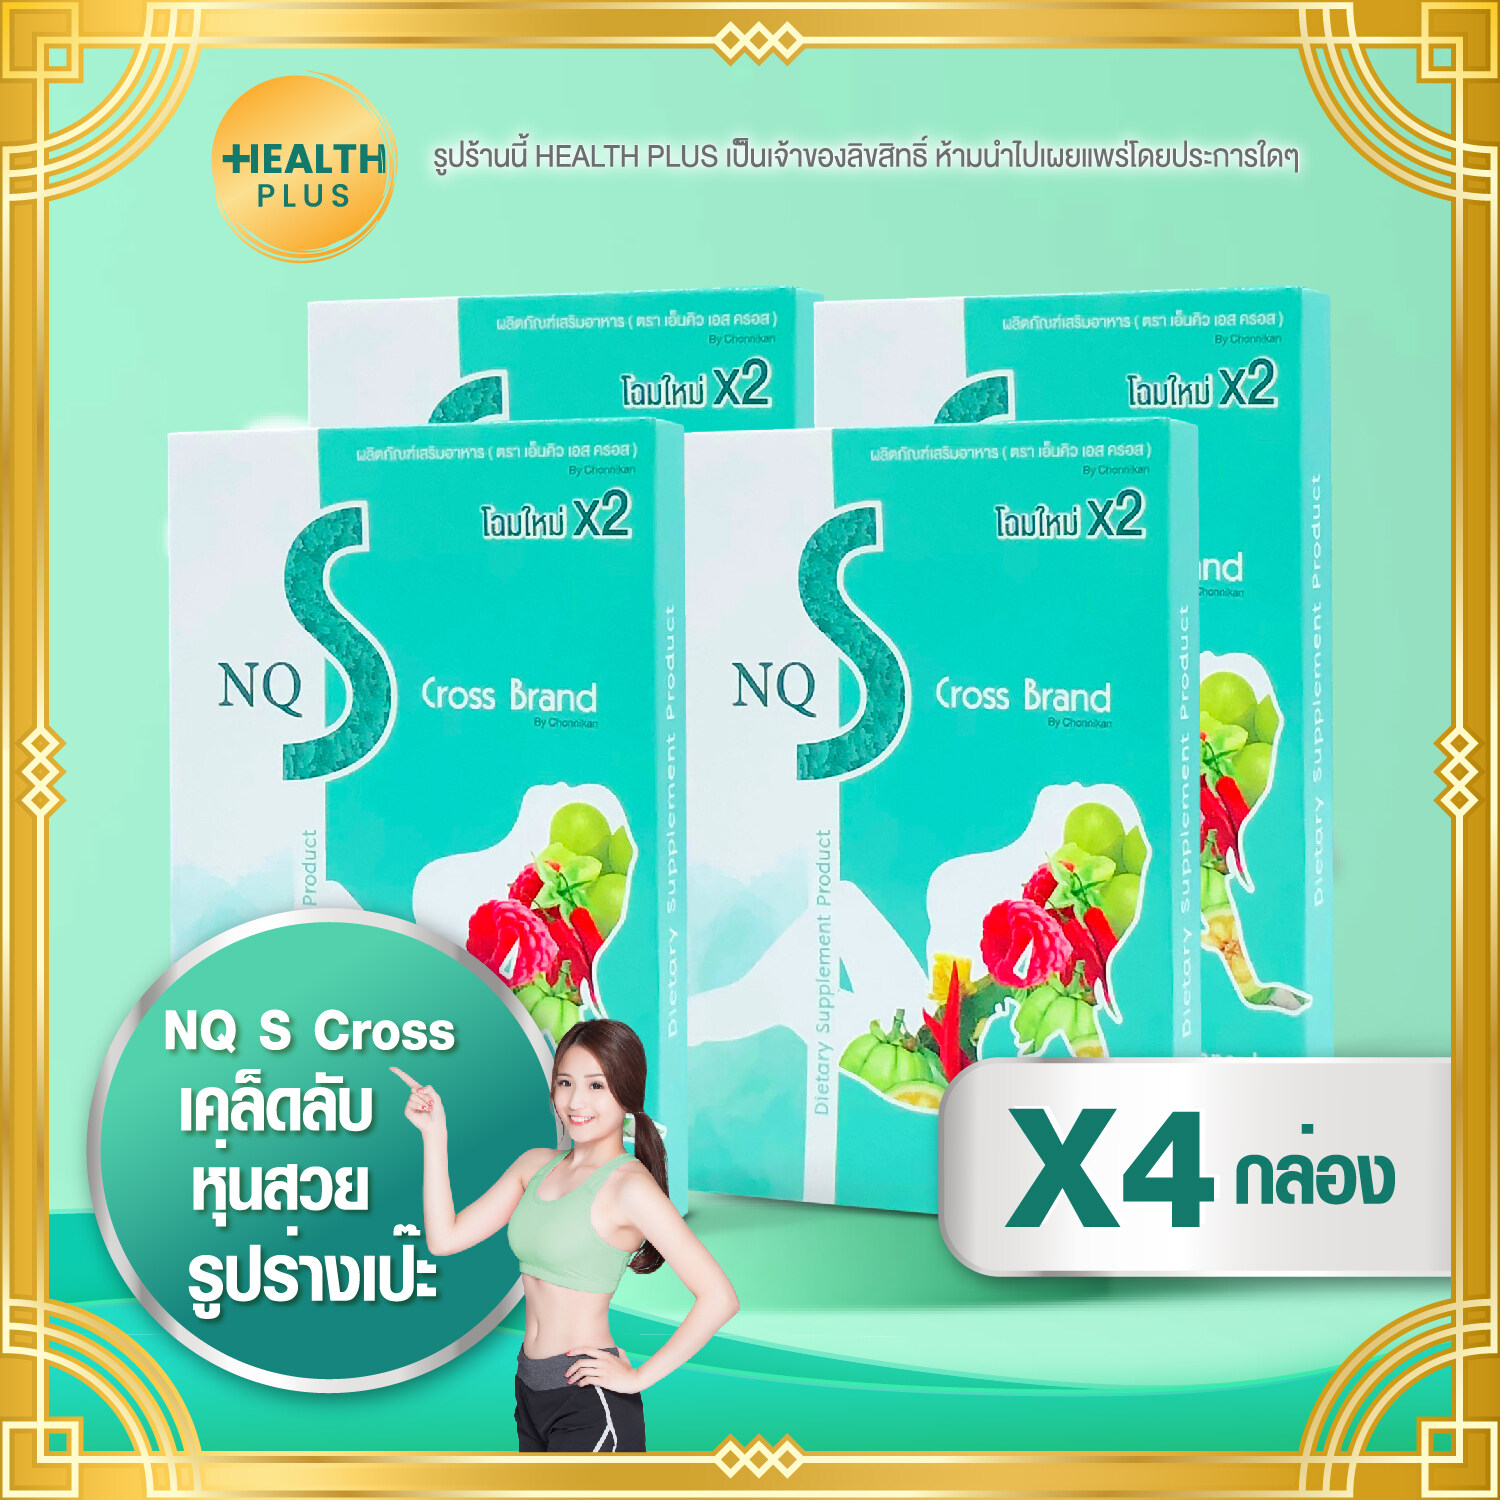 NQ S Cross Brand [ เซ็ต 4 กล่อง ] อาหารเสริม (10 แคปซูล / กล่อง) (อ่านรายละเอียดสินค้าก่อนสั่งซื้อ)